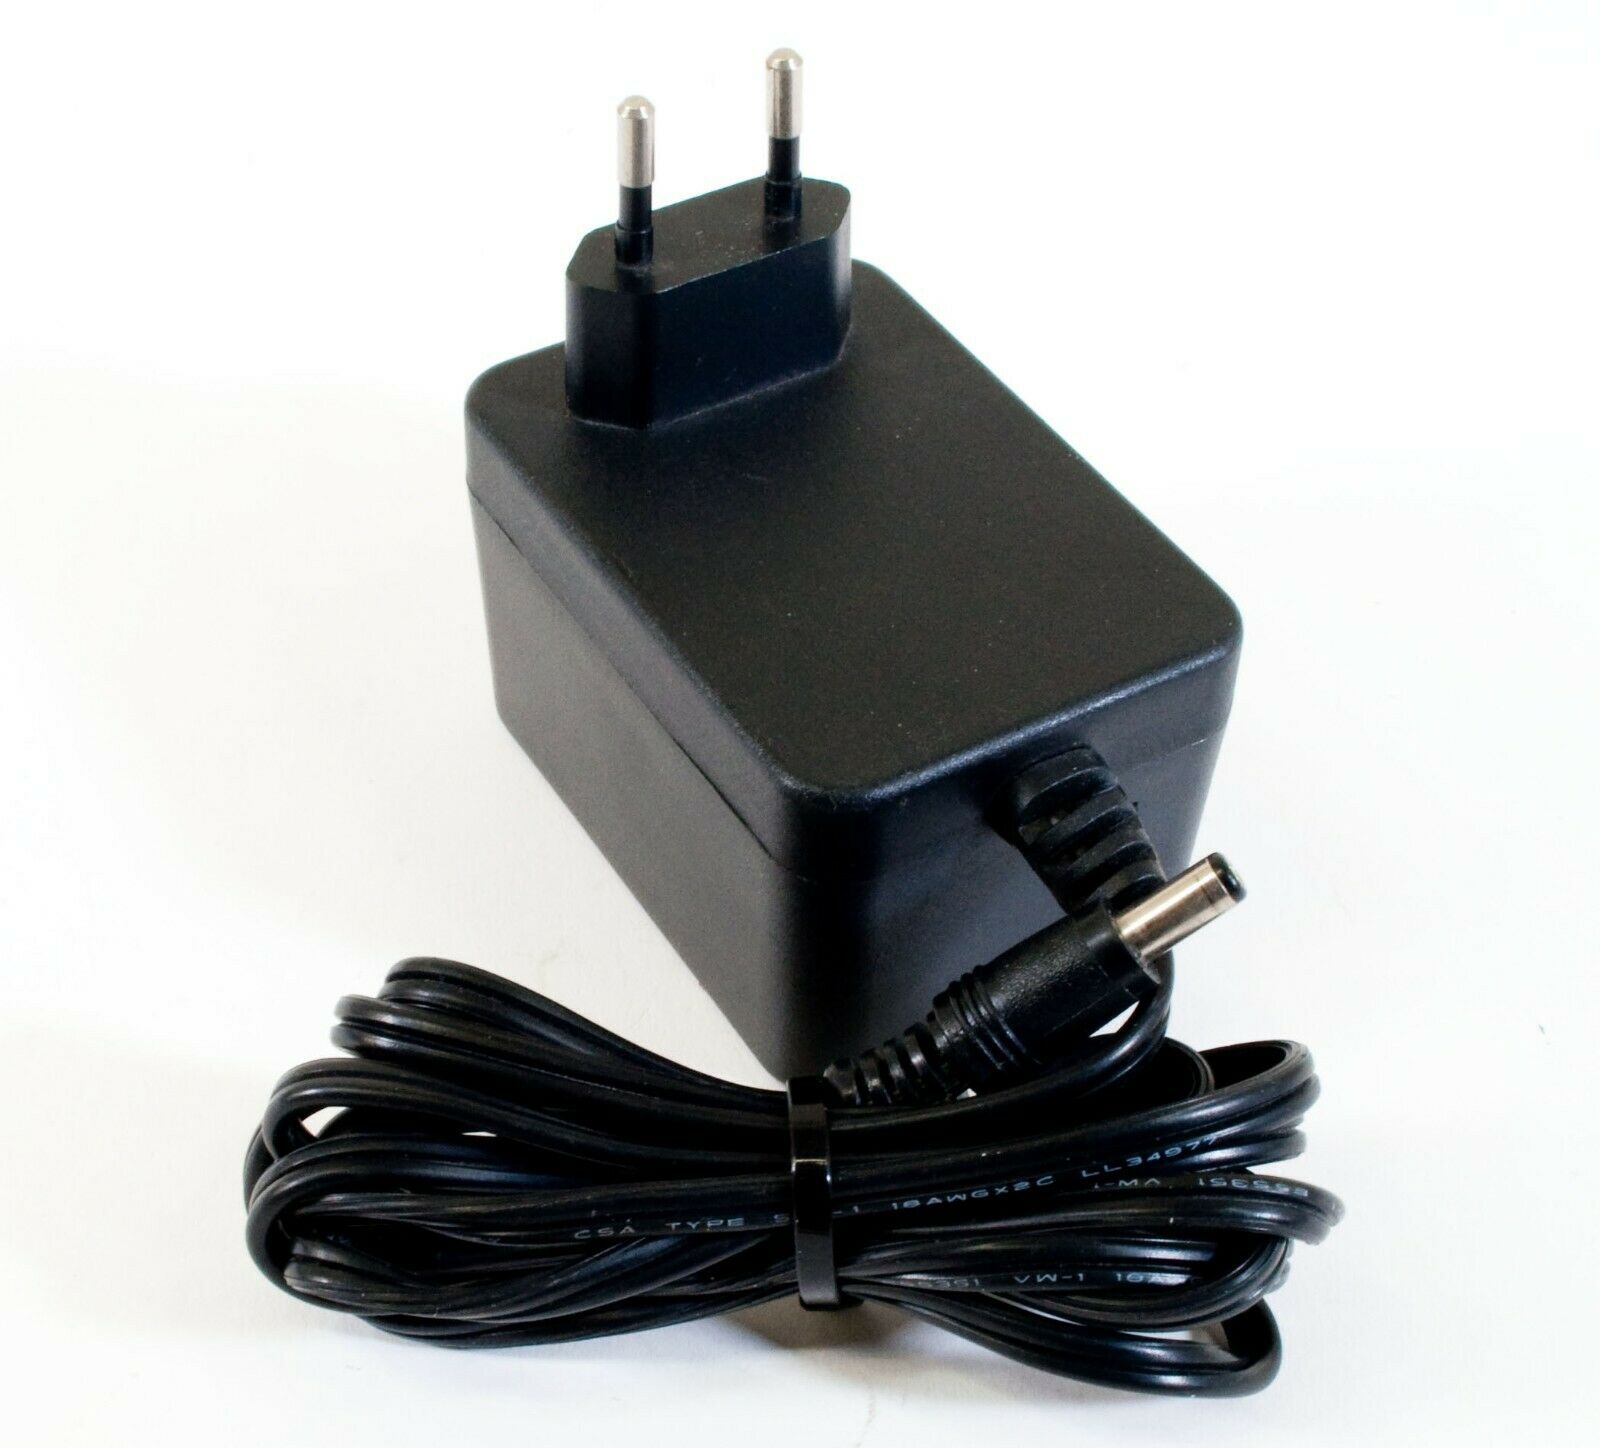 Speclin SL-4801 AC Adapter 13.5V 750mA Original Power Supply Europlug Output Current: 750 mA Volt - Click Image to Close